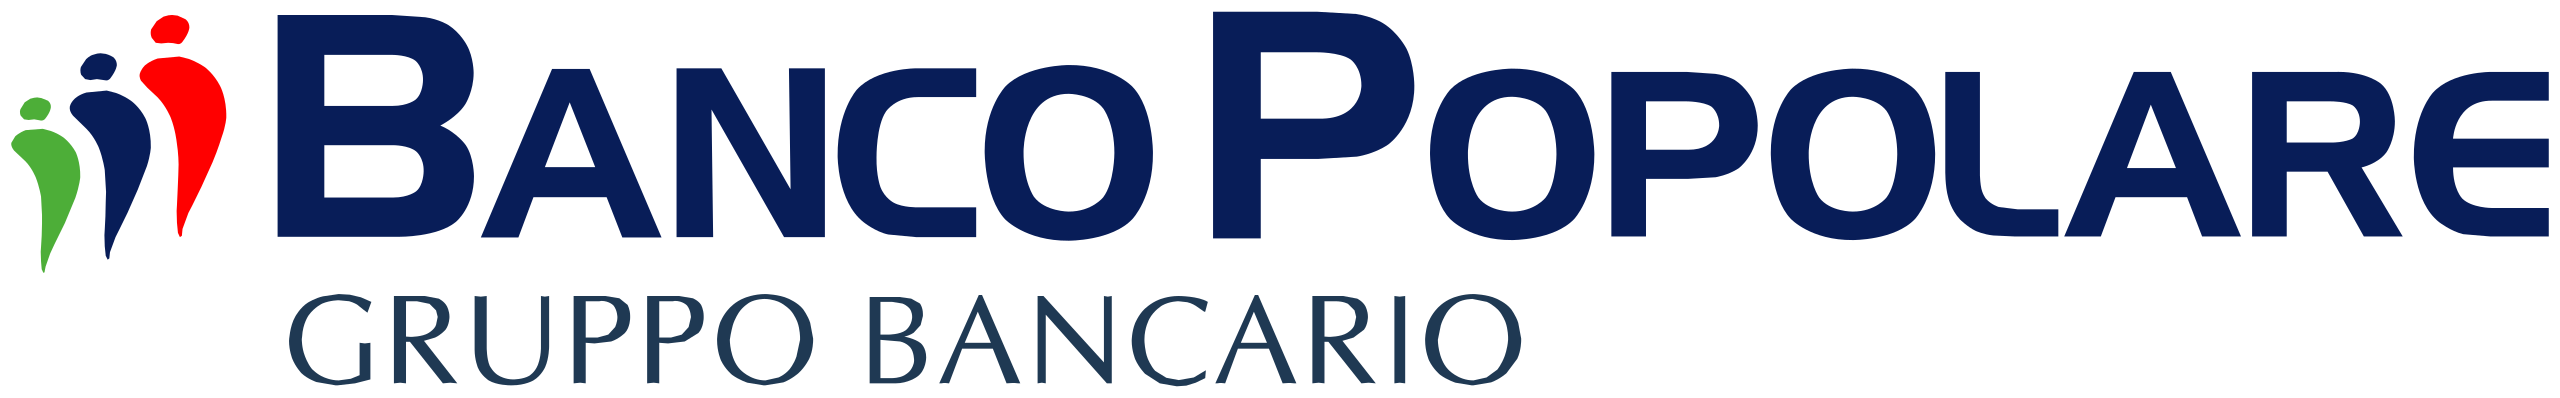 2560px-Logo_banco_popolare_gruppo_bancario.svg